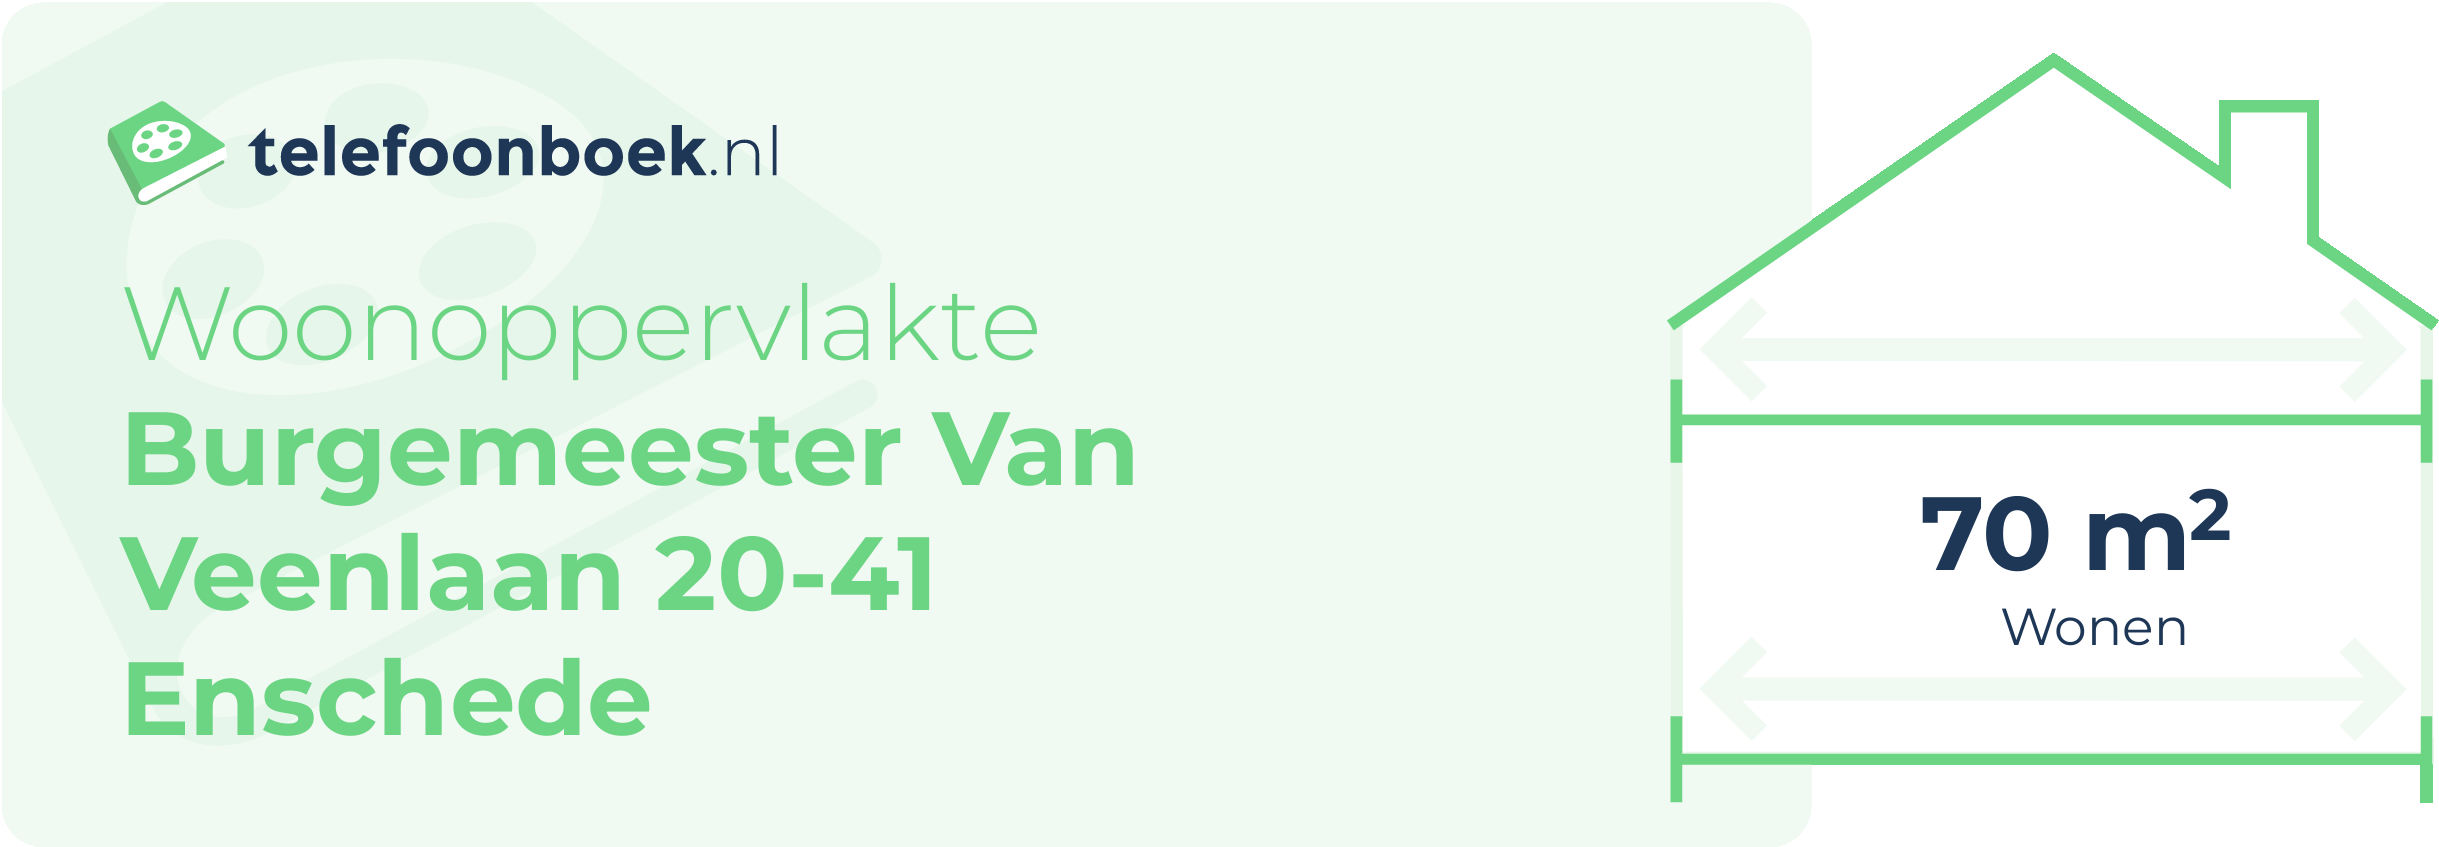 Woonoppervlakte Burgemeester Van Veenlaan 20-41 Enschede